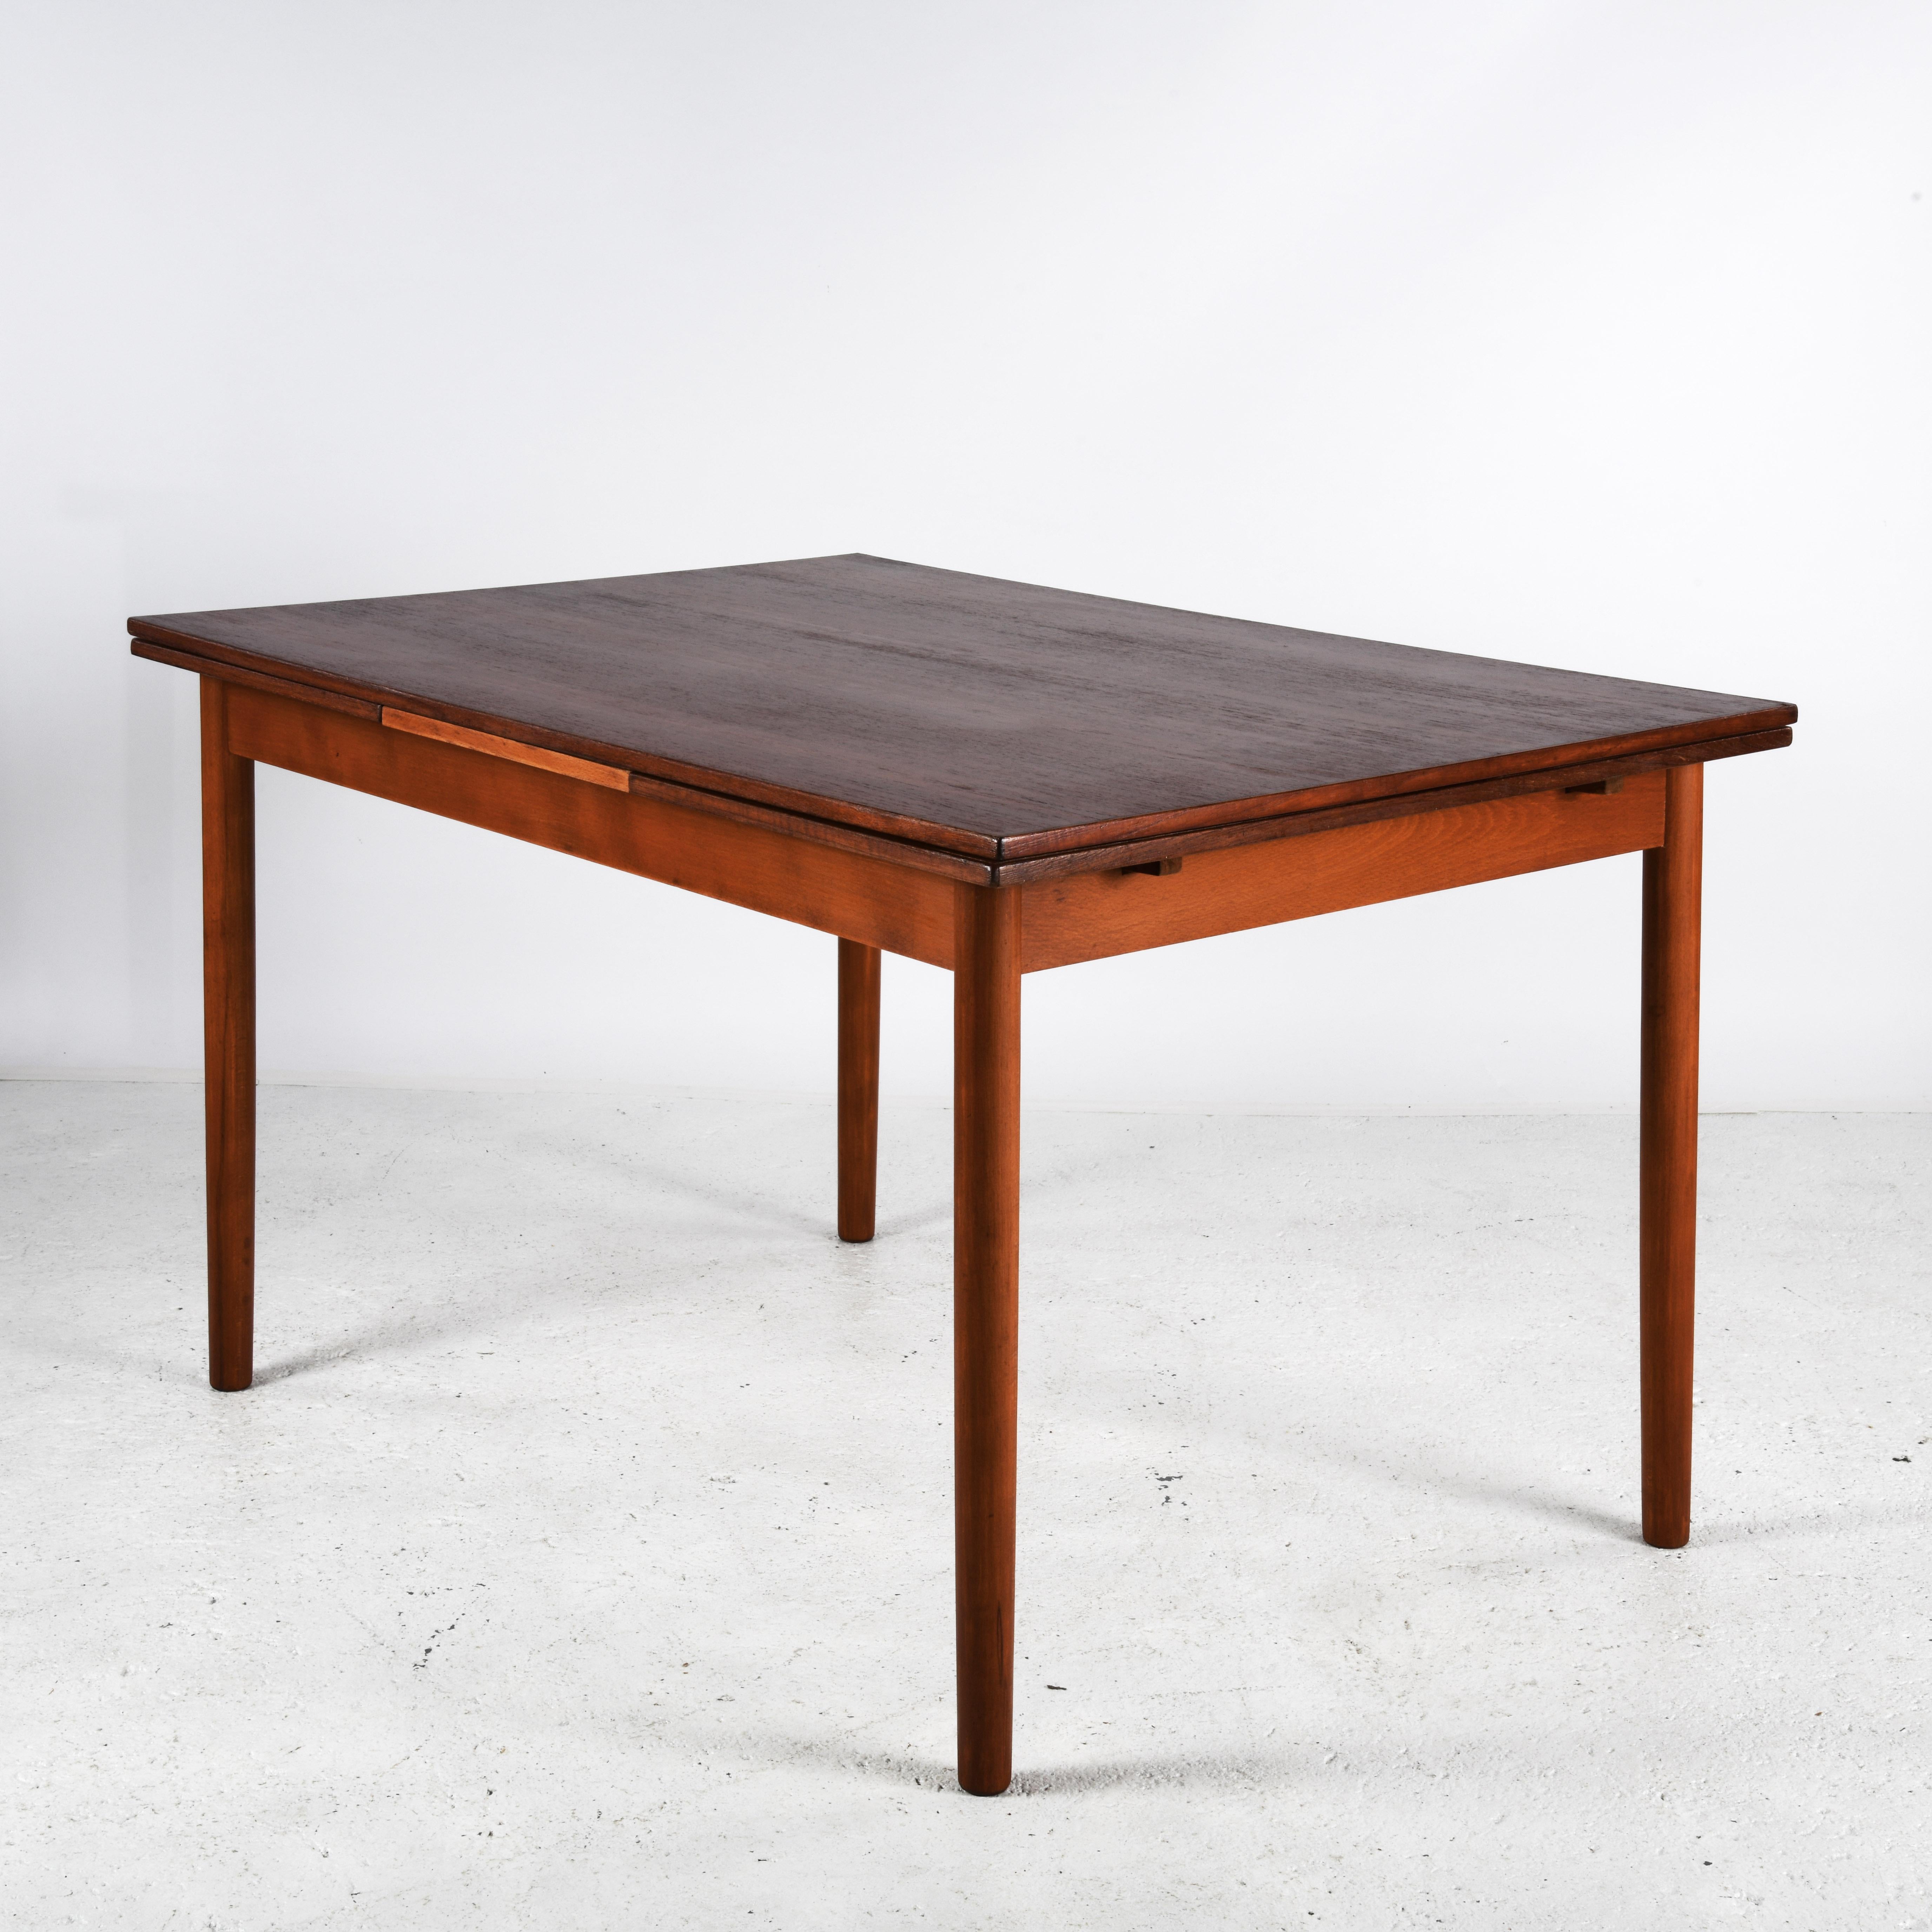 Table de salle à manger en teck du Danemark, fabriquée dans les années 1960/70. La table est composée d'un plateau et de deux plateaux rétractables. Les plateaux sont protégés par un vernis satiné pour une utilisation sans nappe. Les pieds sont